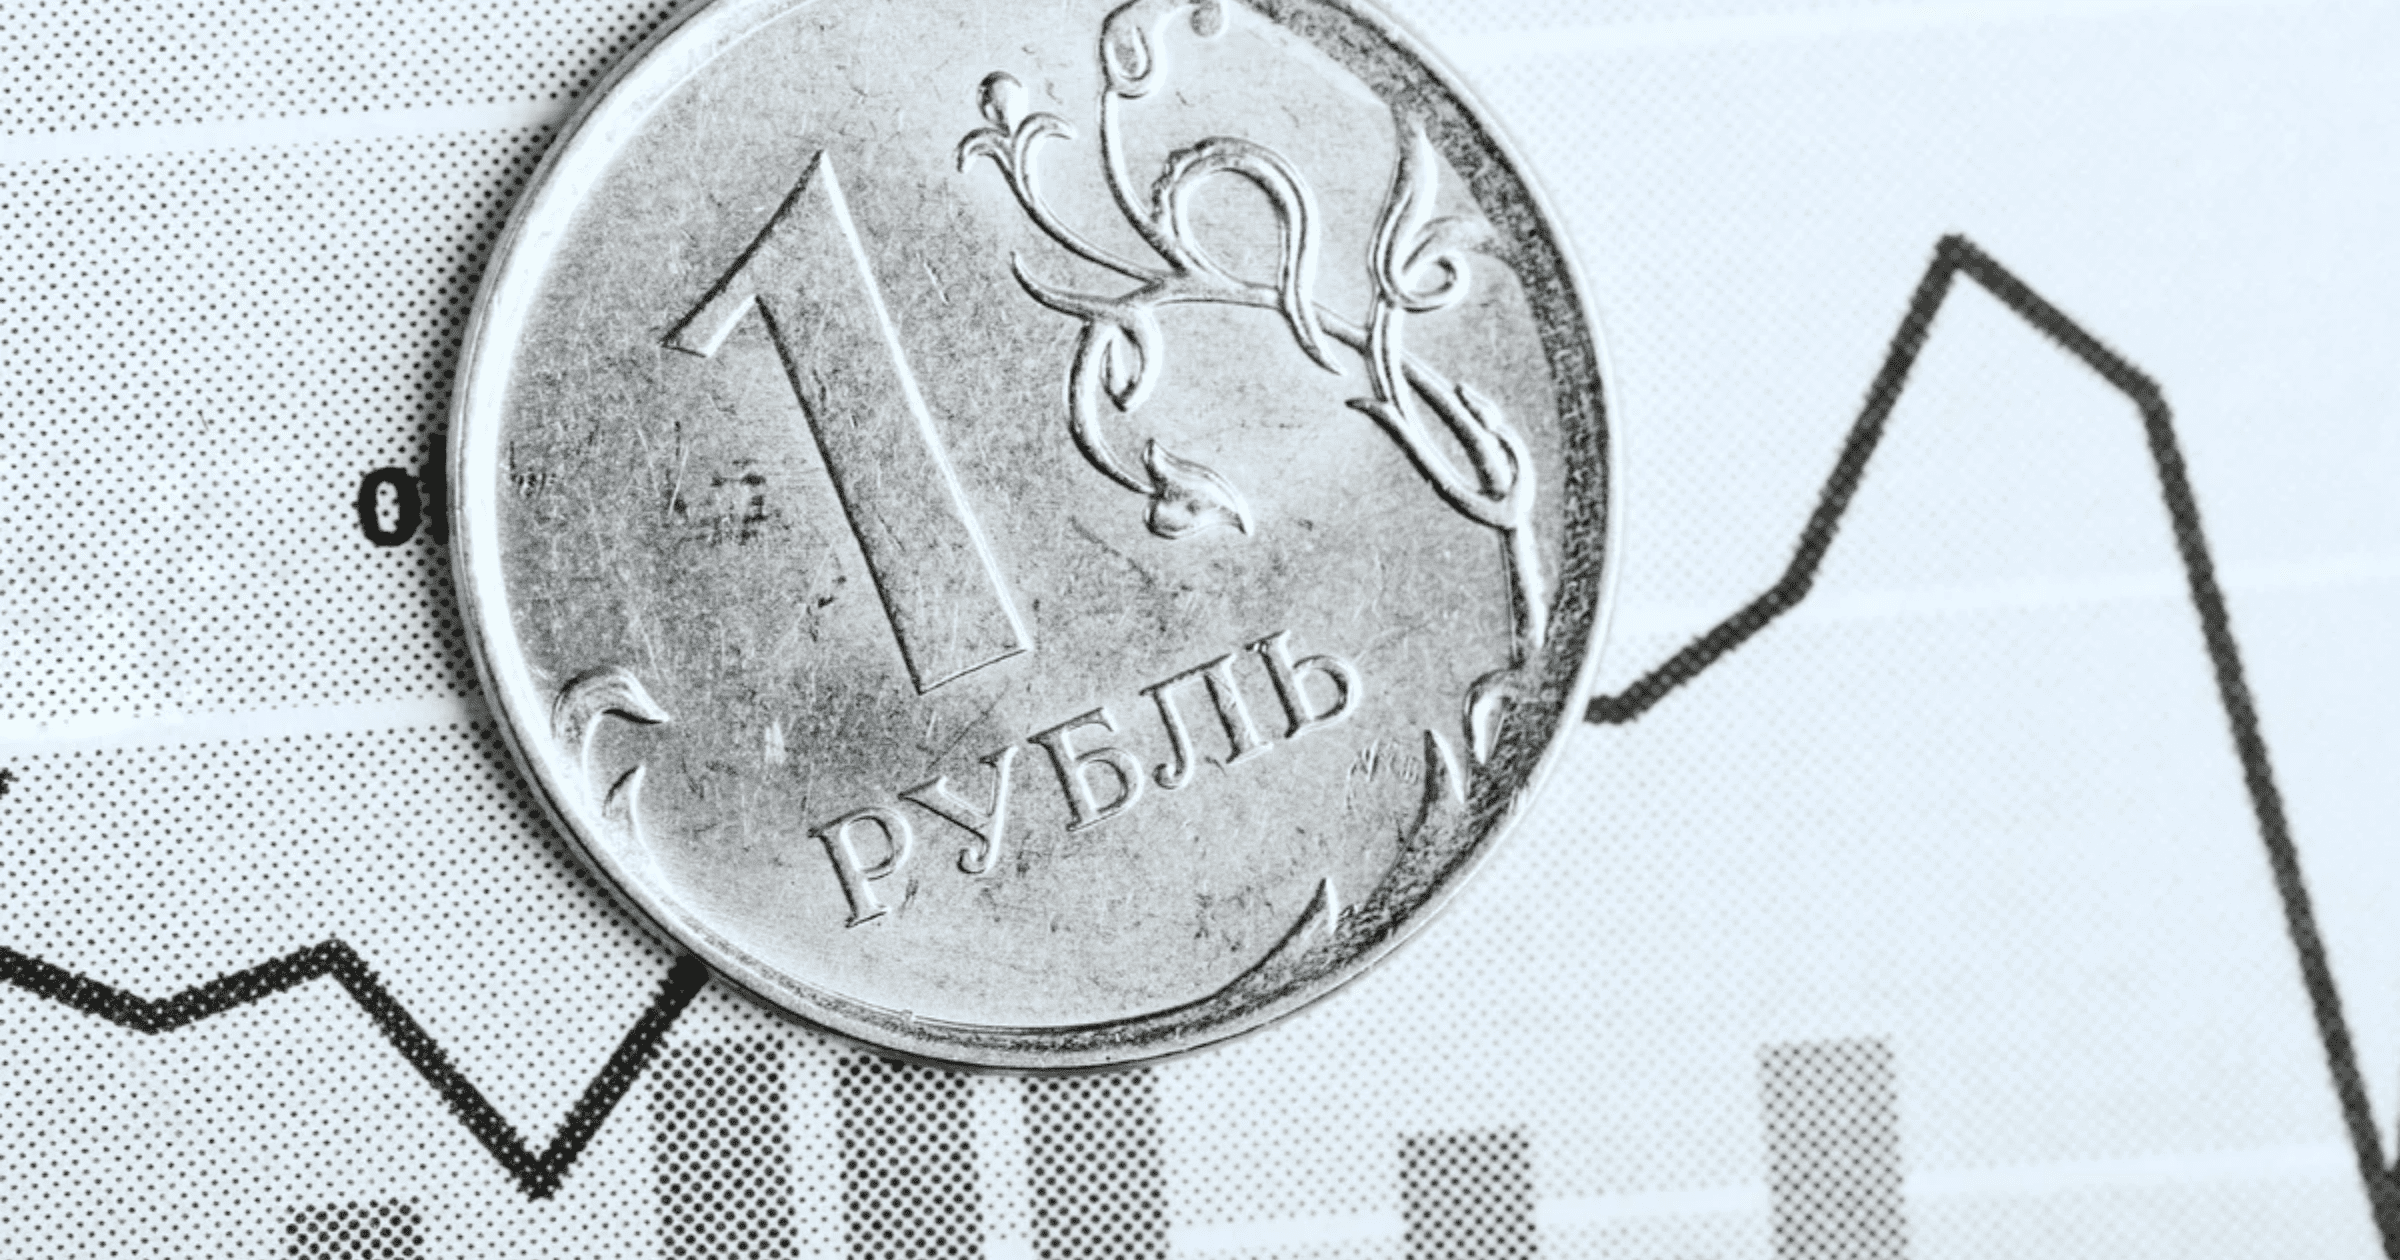 Российские рубли в сомы